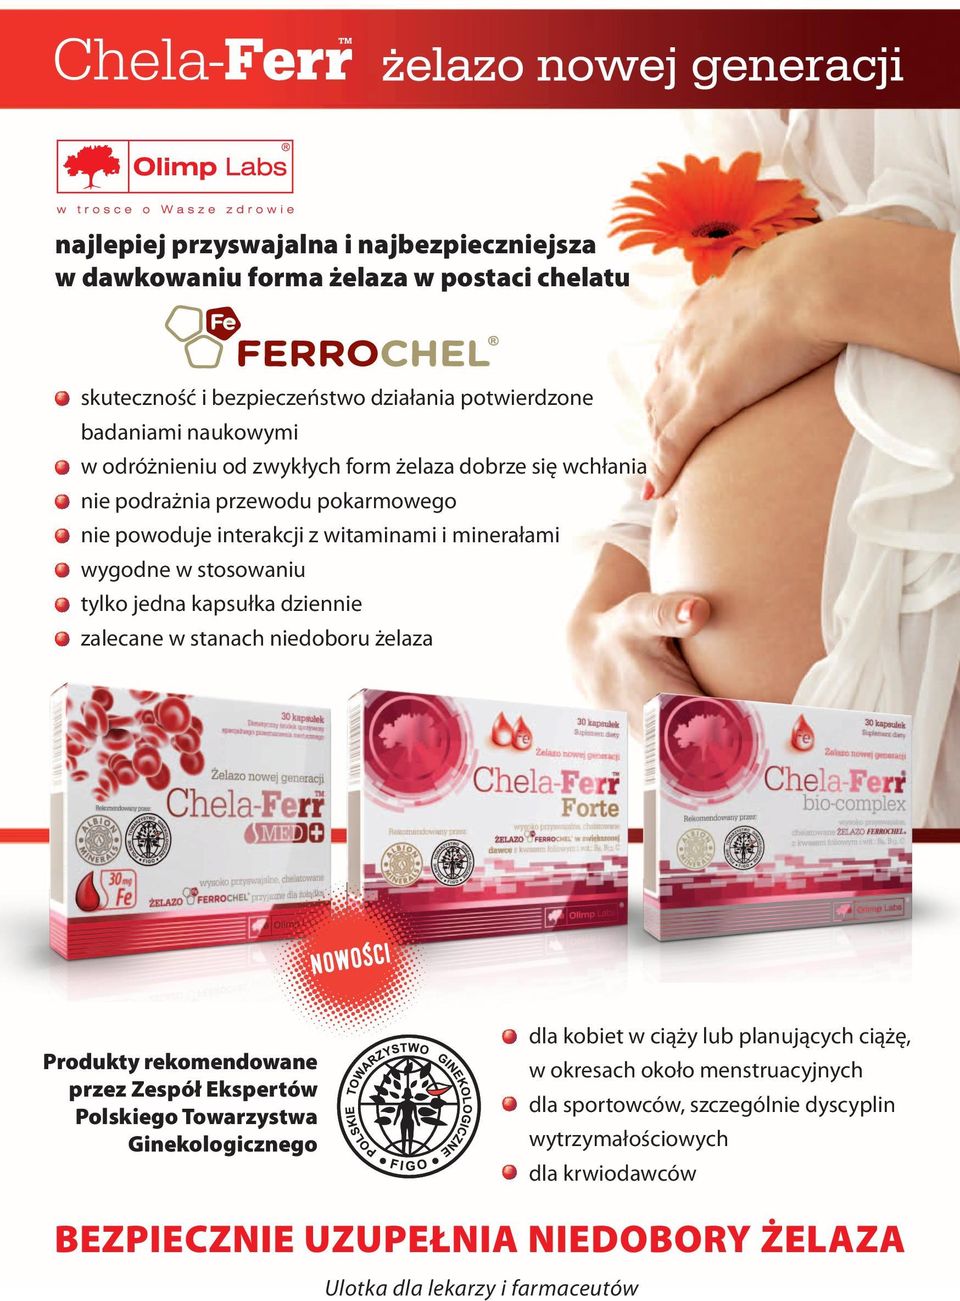 dziennie zalecane w stanach niedoboru żelaza NOWOŚCI Produkty rekomendowane przez Zespół Ekspertów Polskiego Towarzystwa Ginekologicznego dla kobiet w ciąży lub planujących